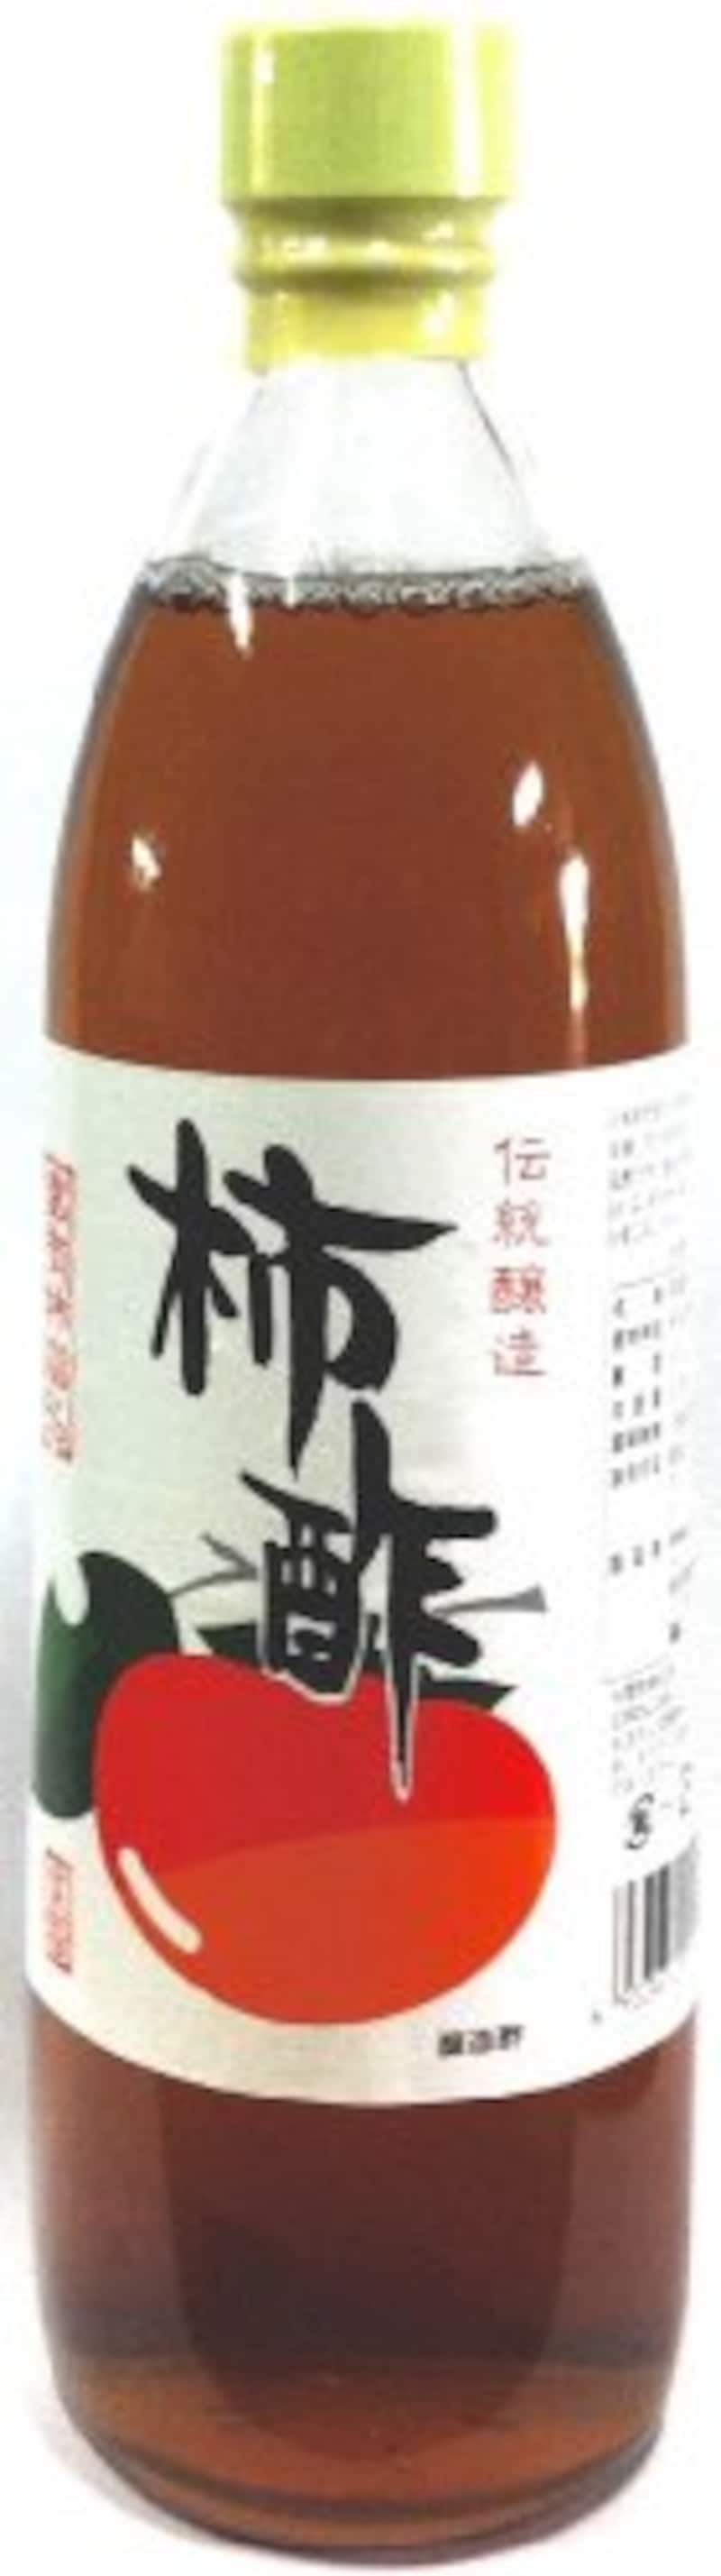 九州酢造,柿酢